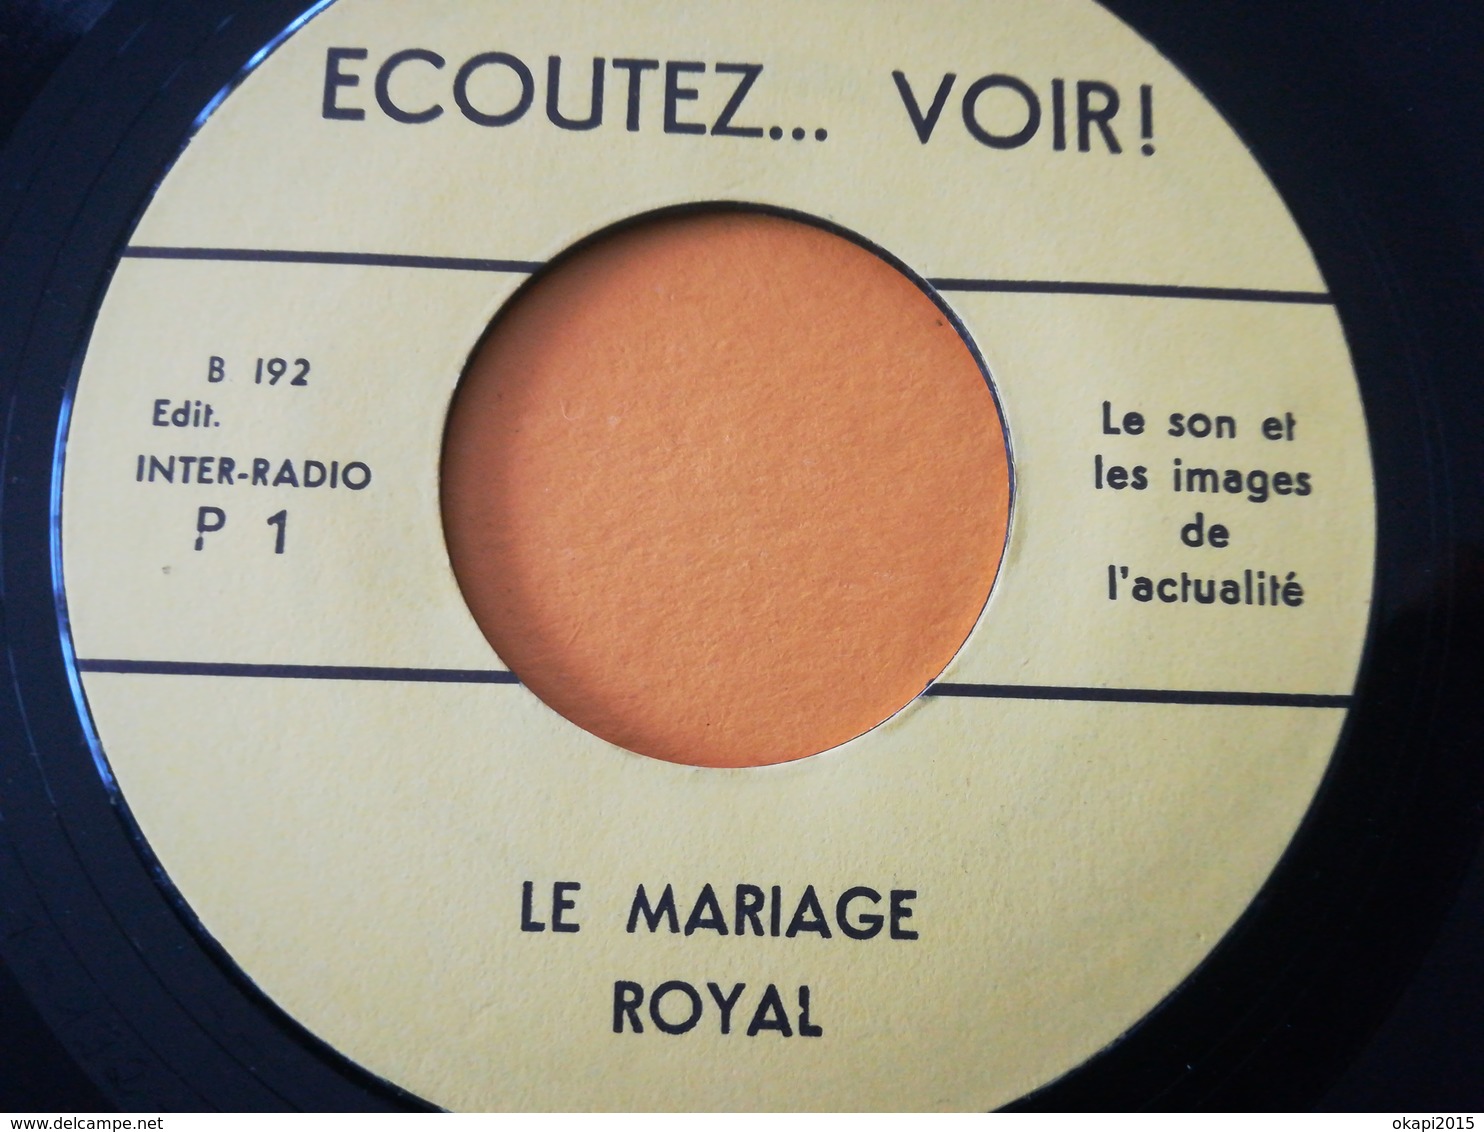 LE PREMIER NUMÉRO D UN MAGAZINE SONORE D INFORMATIONS "ÉCOUTEZ ... VOIR !" LIVRET + DISQUE MARIAGE ROI BAUDOIN EN 1961